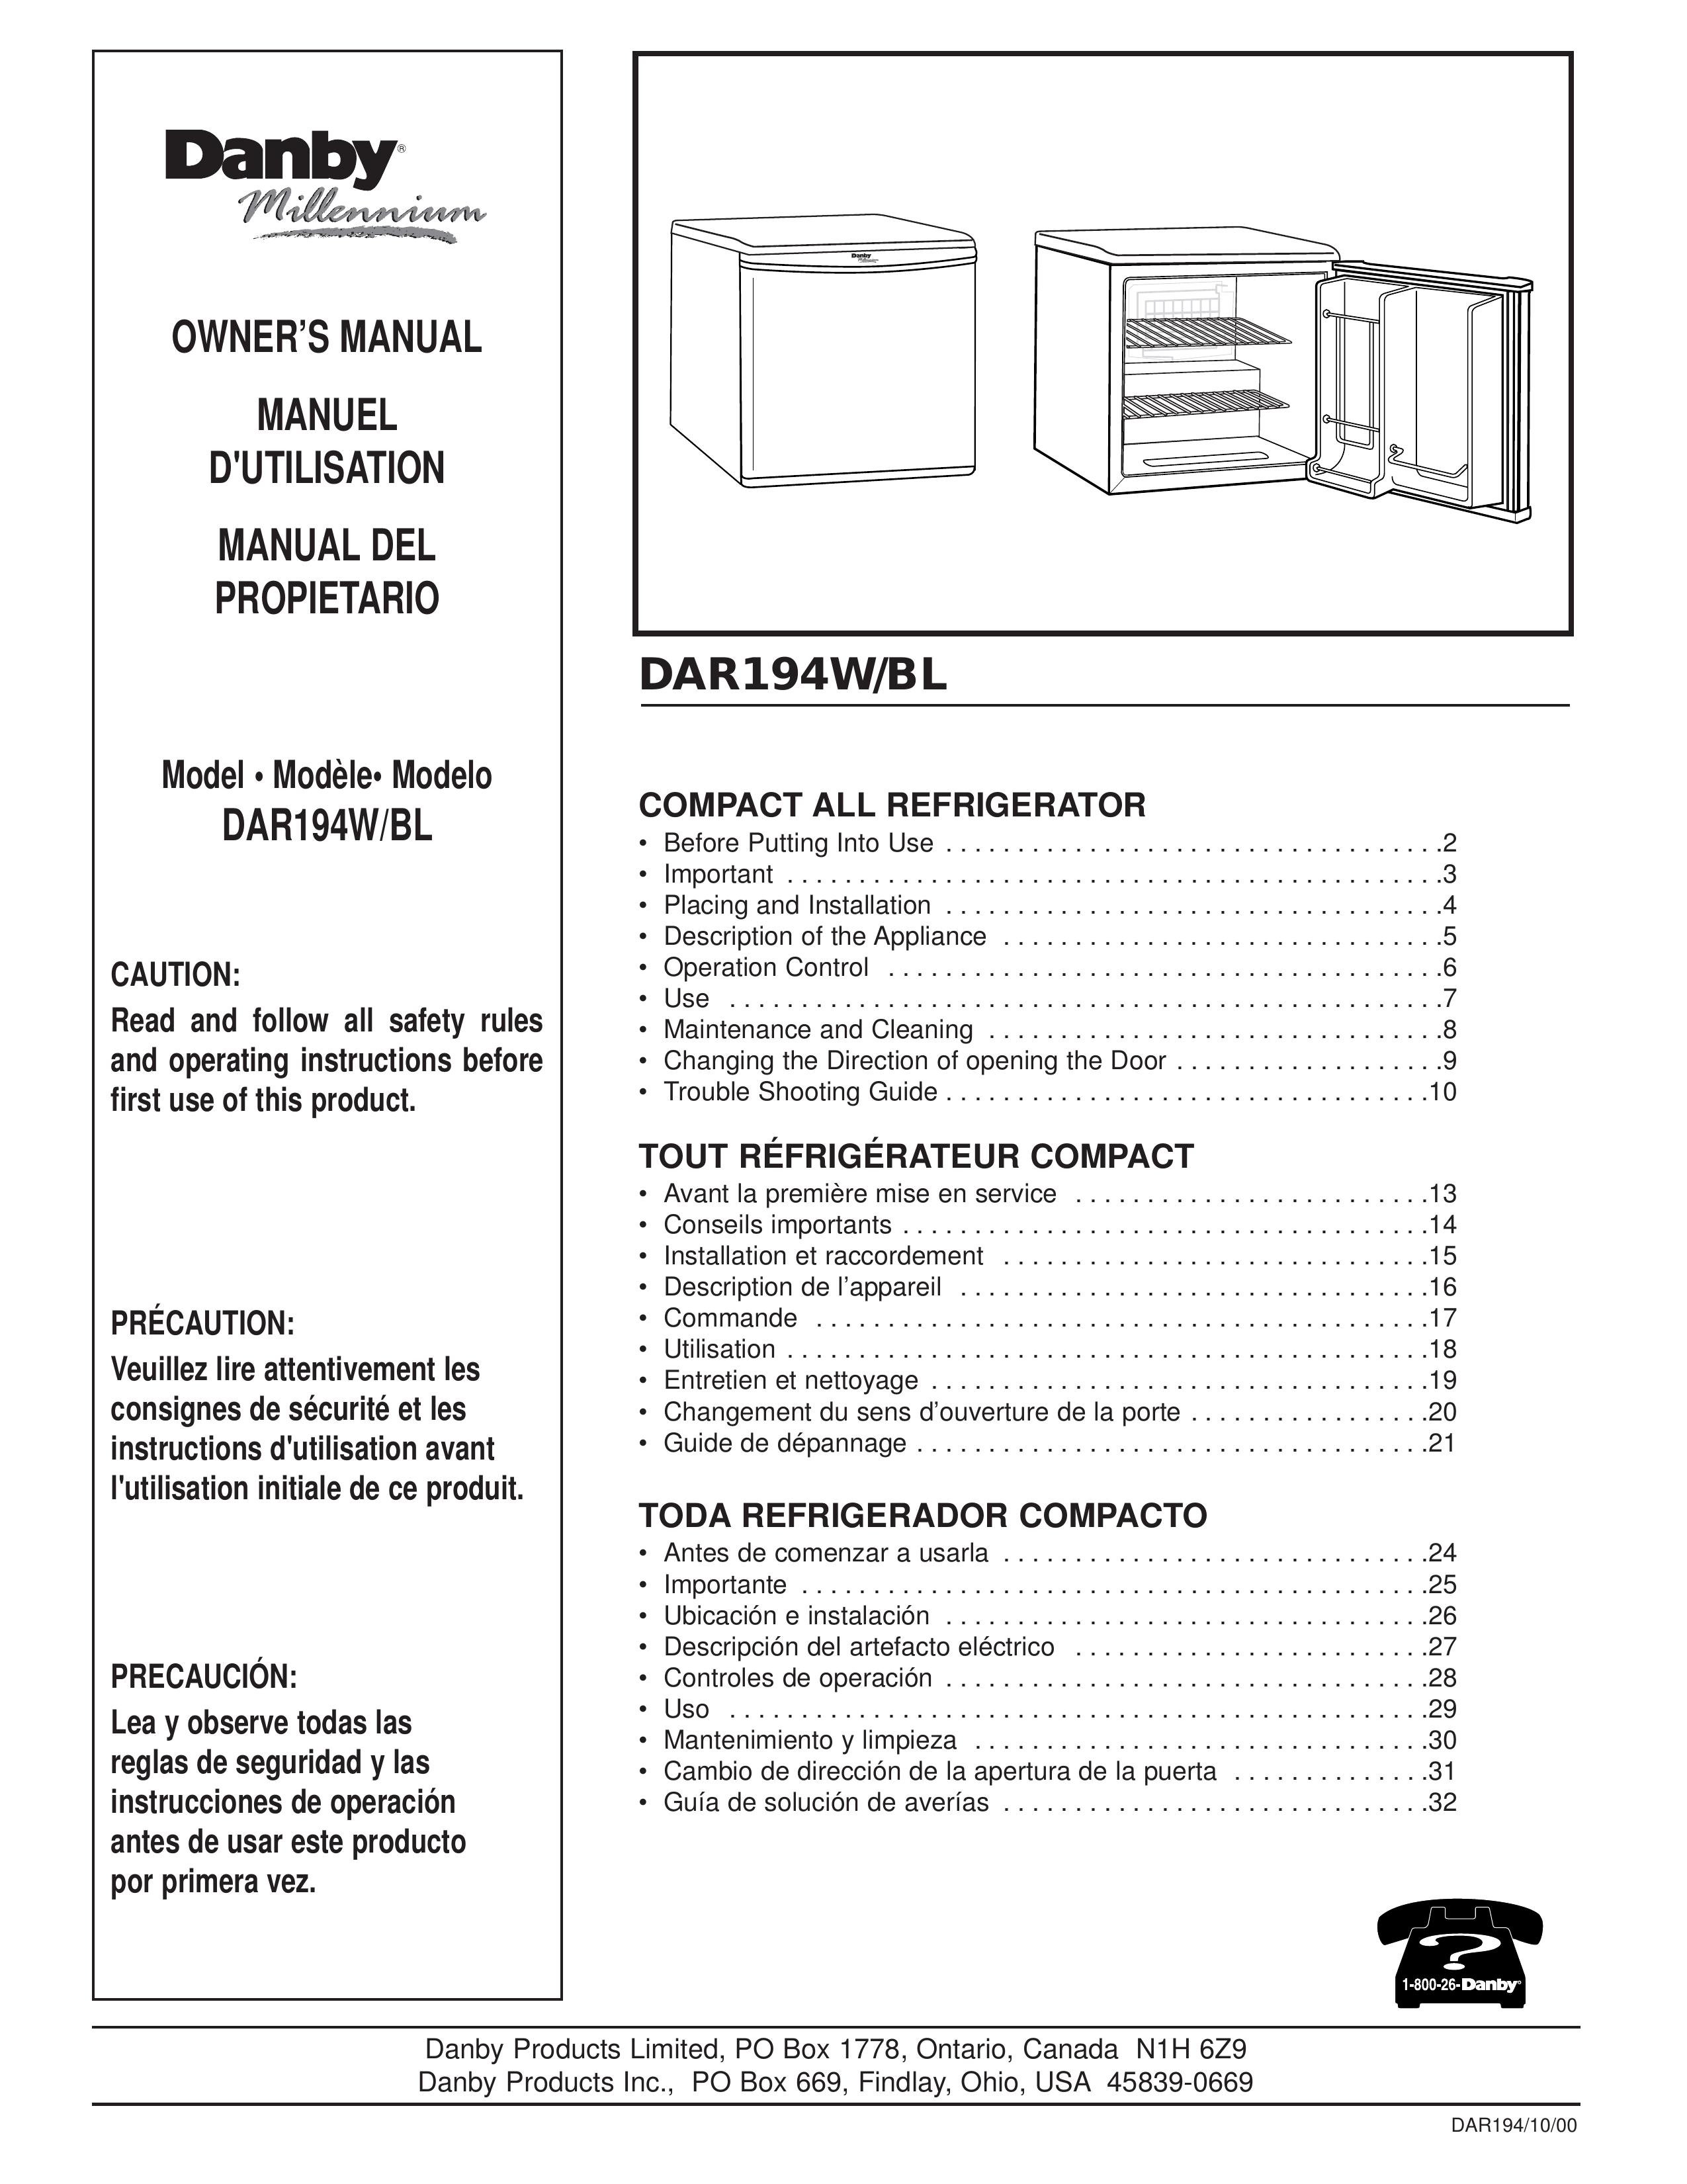 Danby DAR194W Refrigerator User Manual